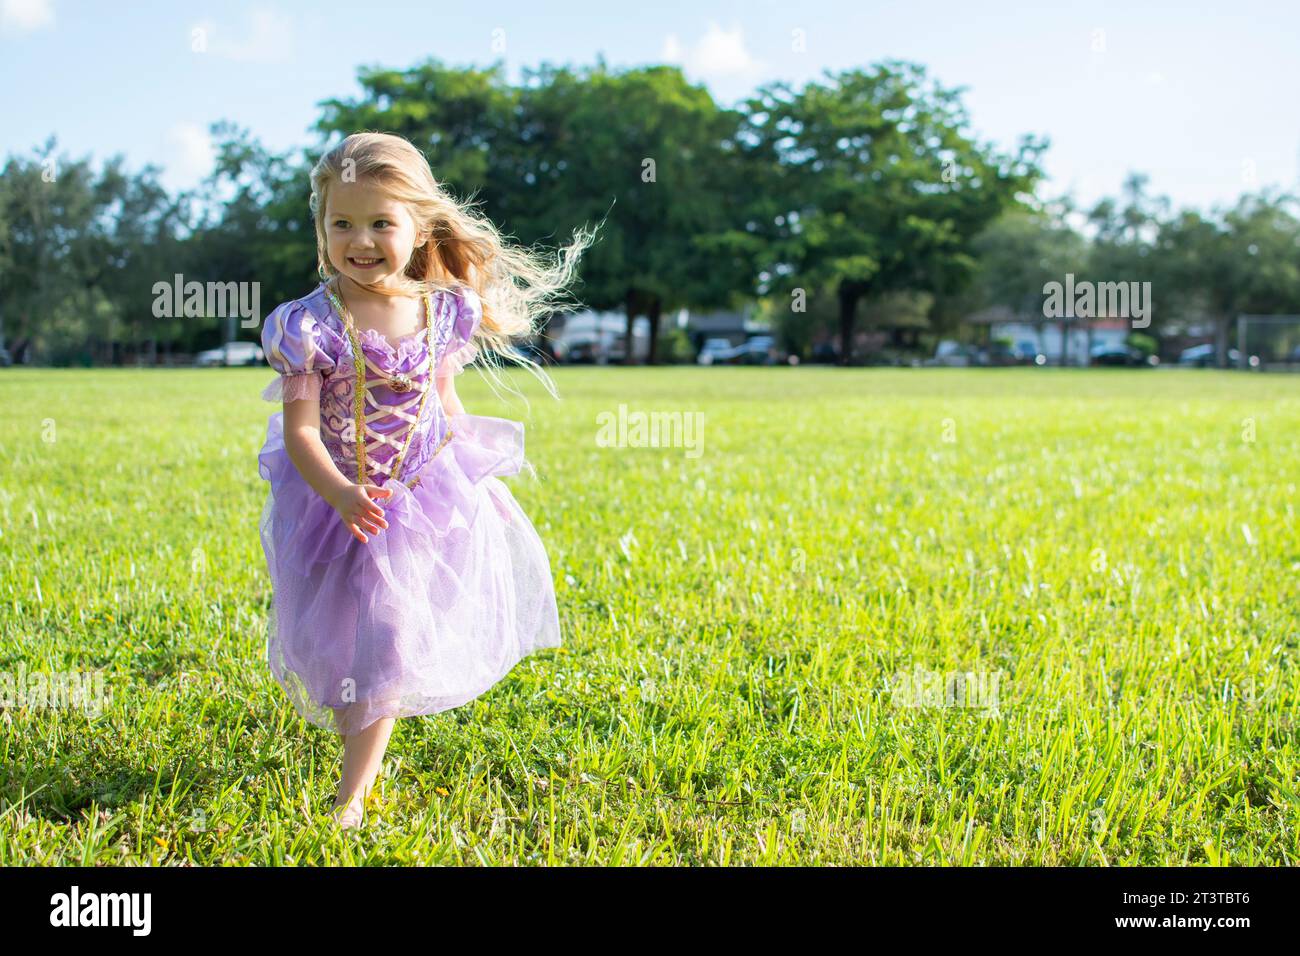 Ein kleines Mädchen mit langen blonden Haaren, das auf dem Feld läuft. Rapunzel Prinzessin, kleines Mädchen. Halloween-Kostüm, Halloween-Party Stockfoto